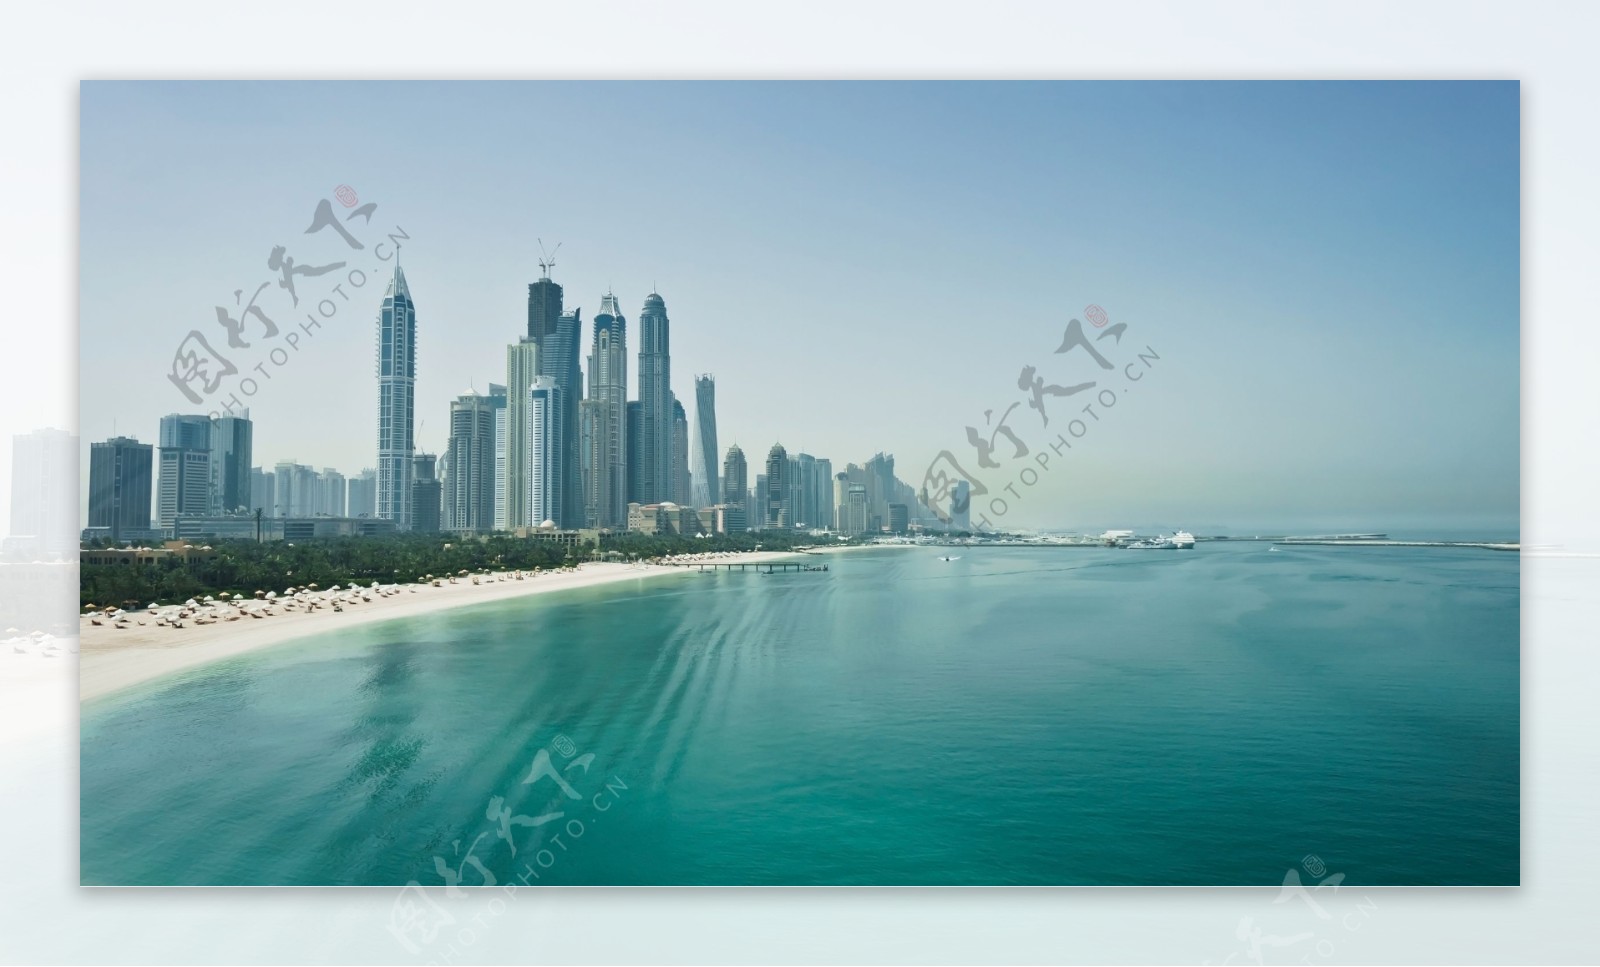 海边美丽迪拜高楼风景图片